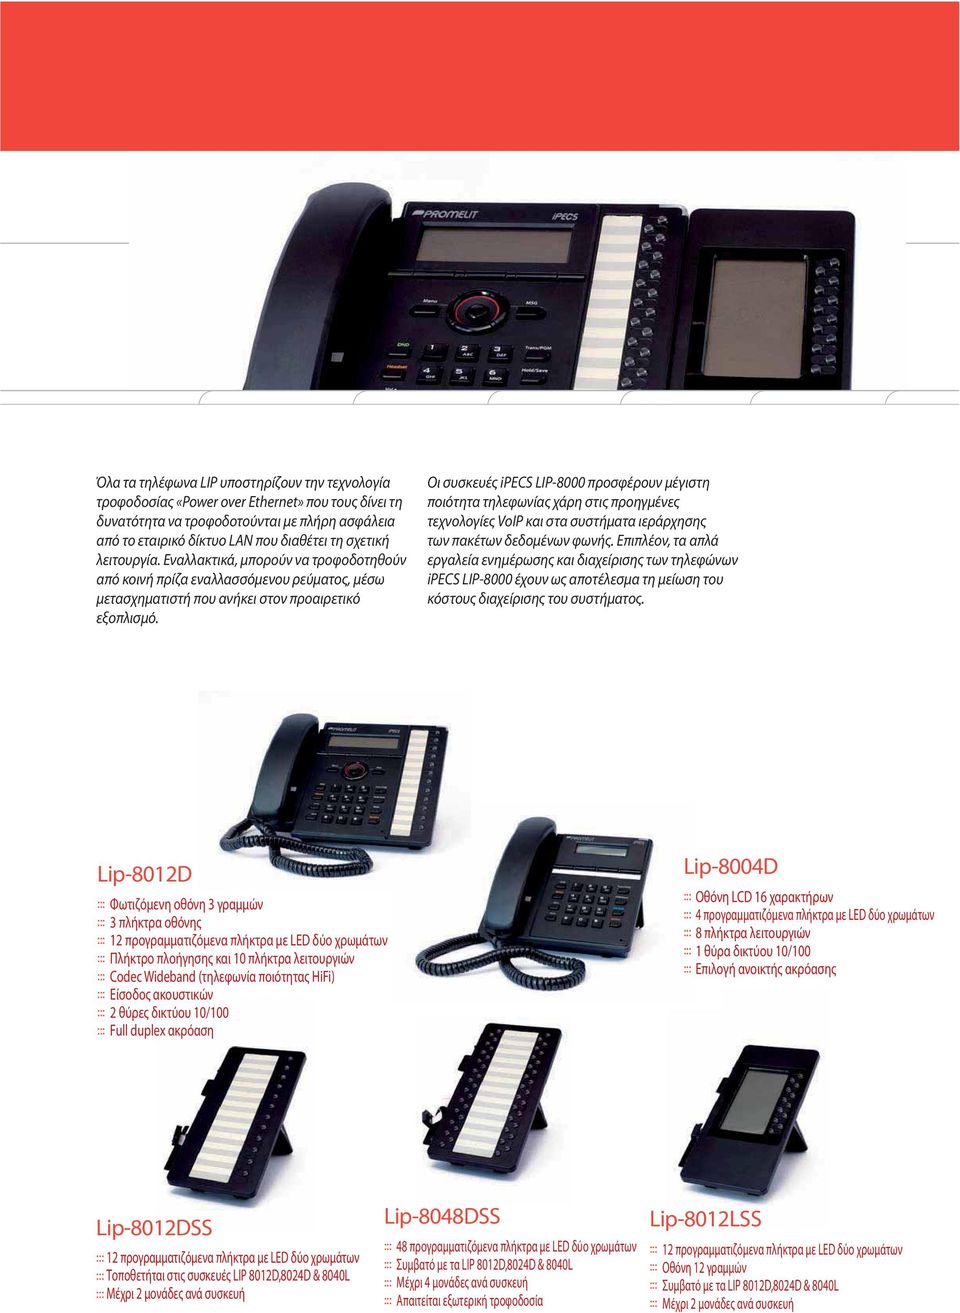 Οι συσκευές ipecs LIP-8000 προσφέρουν μέγιστη ποιότητα τηλεφωνίας χάρη στις προηγμένες τεχνολογίες VoIP και στα συστήματα ιεράρχησης των πακέτων δεδομένων φωνής.